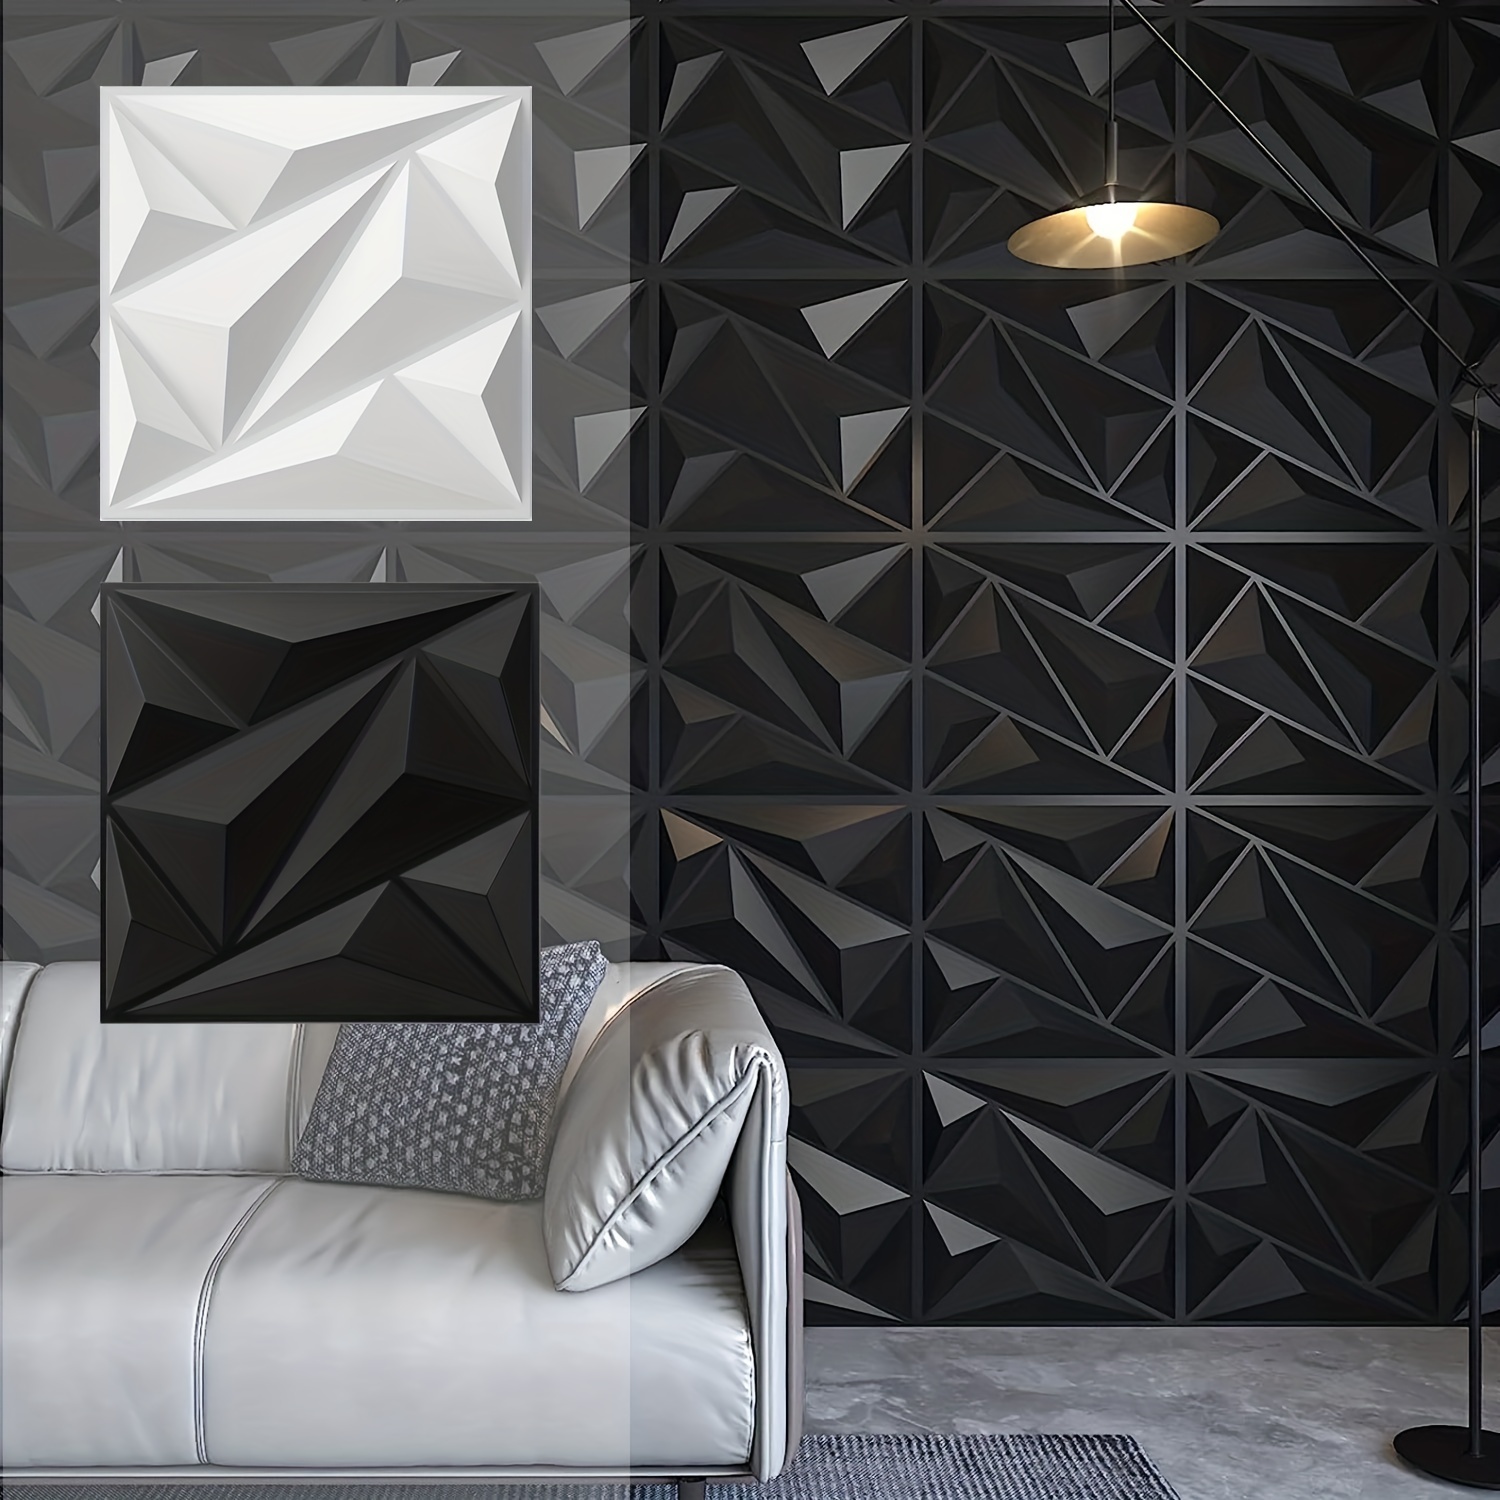 Art3dwallpanels Panel de pared 3D de PVC para decoración de pared interior,  19.7 x 19.7 pulgadas, paneles de pared 3D de PVC, paneles de pared con